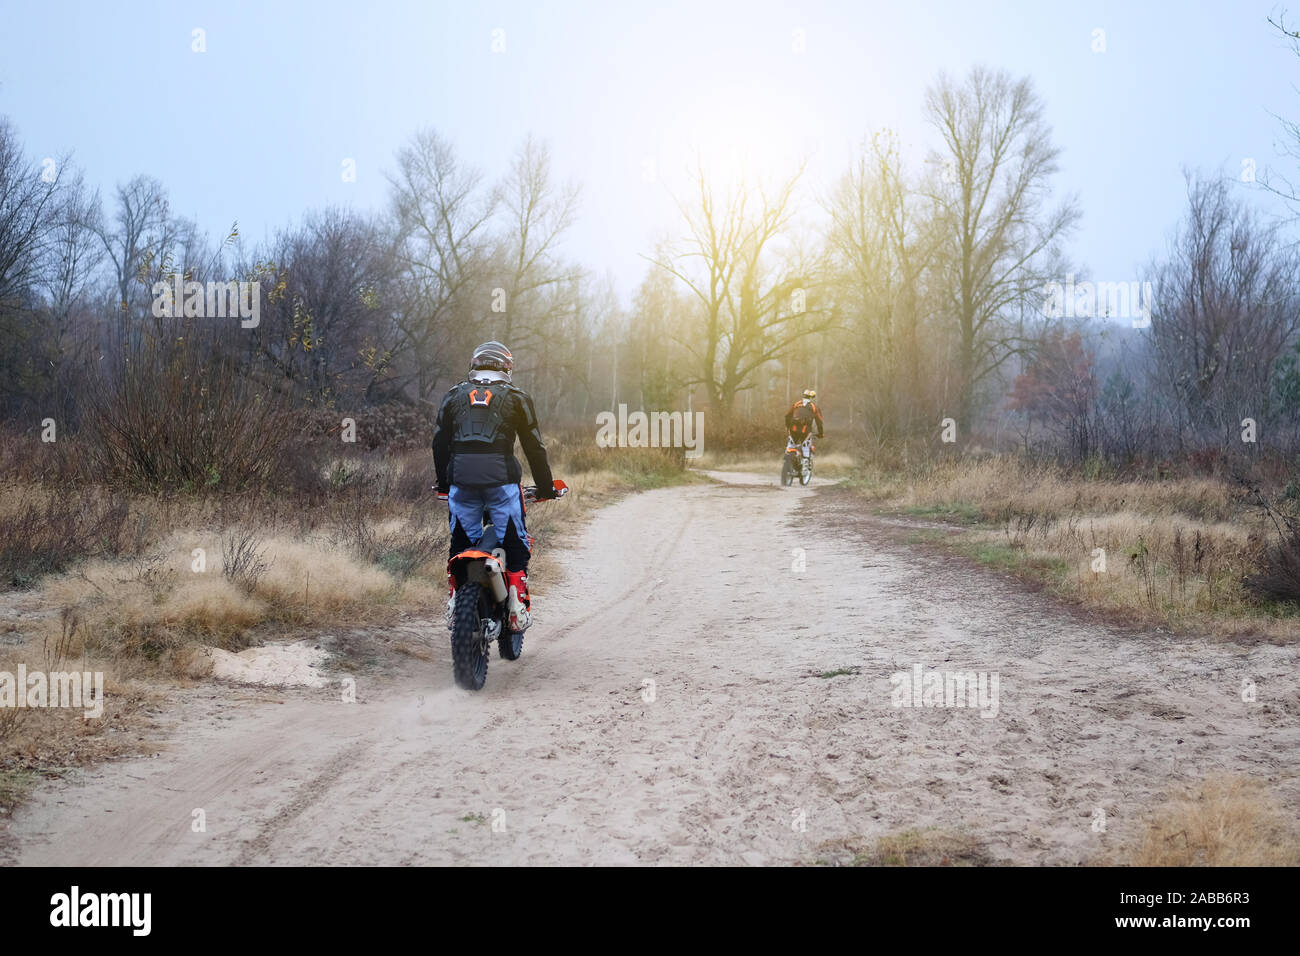 Sport und Aktiv gesund leben Konzept. Motorradfahrer im schützenden im Spätherbst Park. Reiten auf Motorrad an einem sonnigen Tag unter Bäumen. Gesunde Lebensweise. Stockfoto